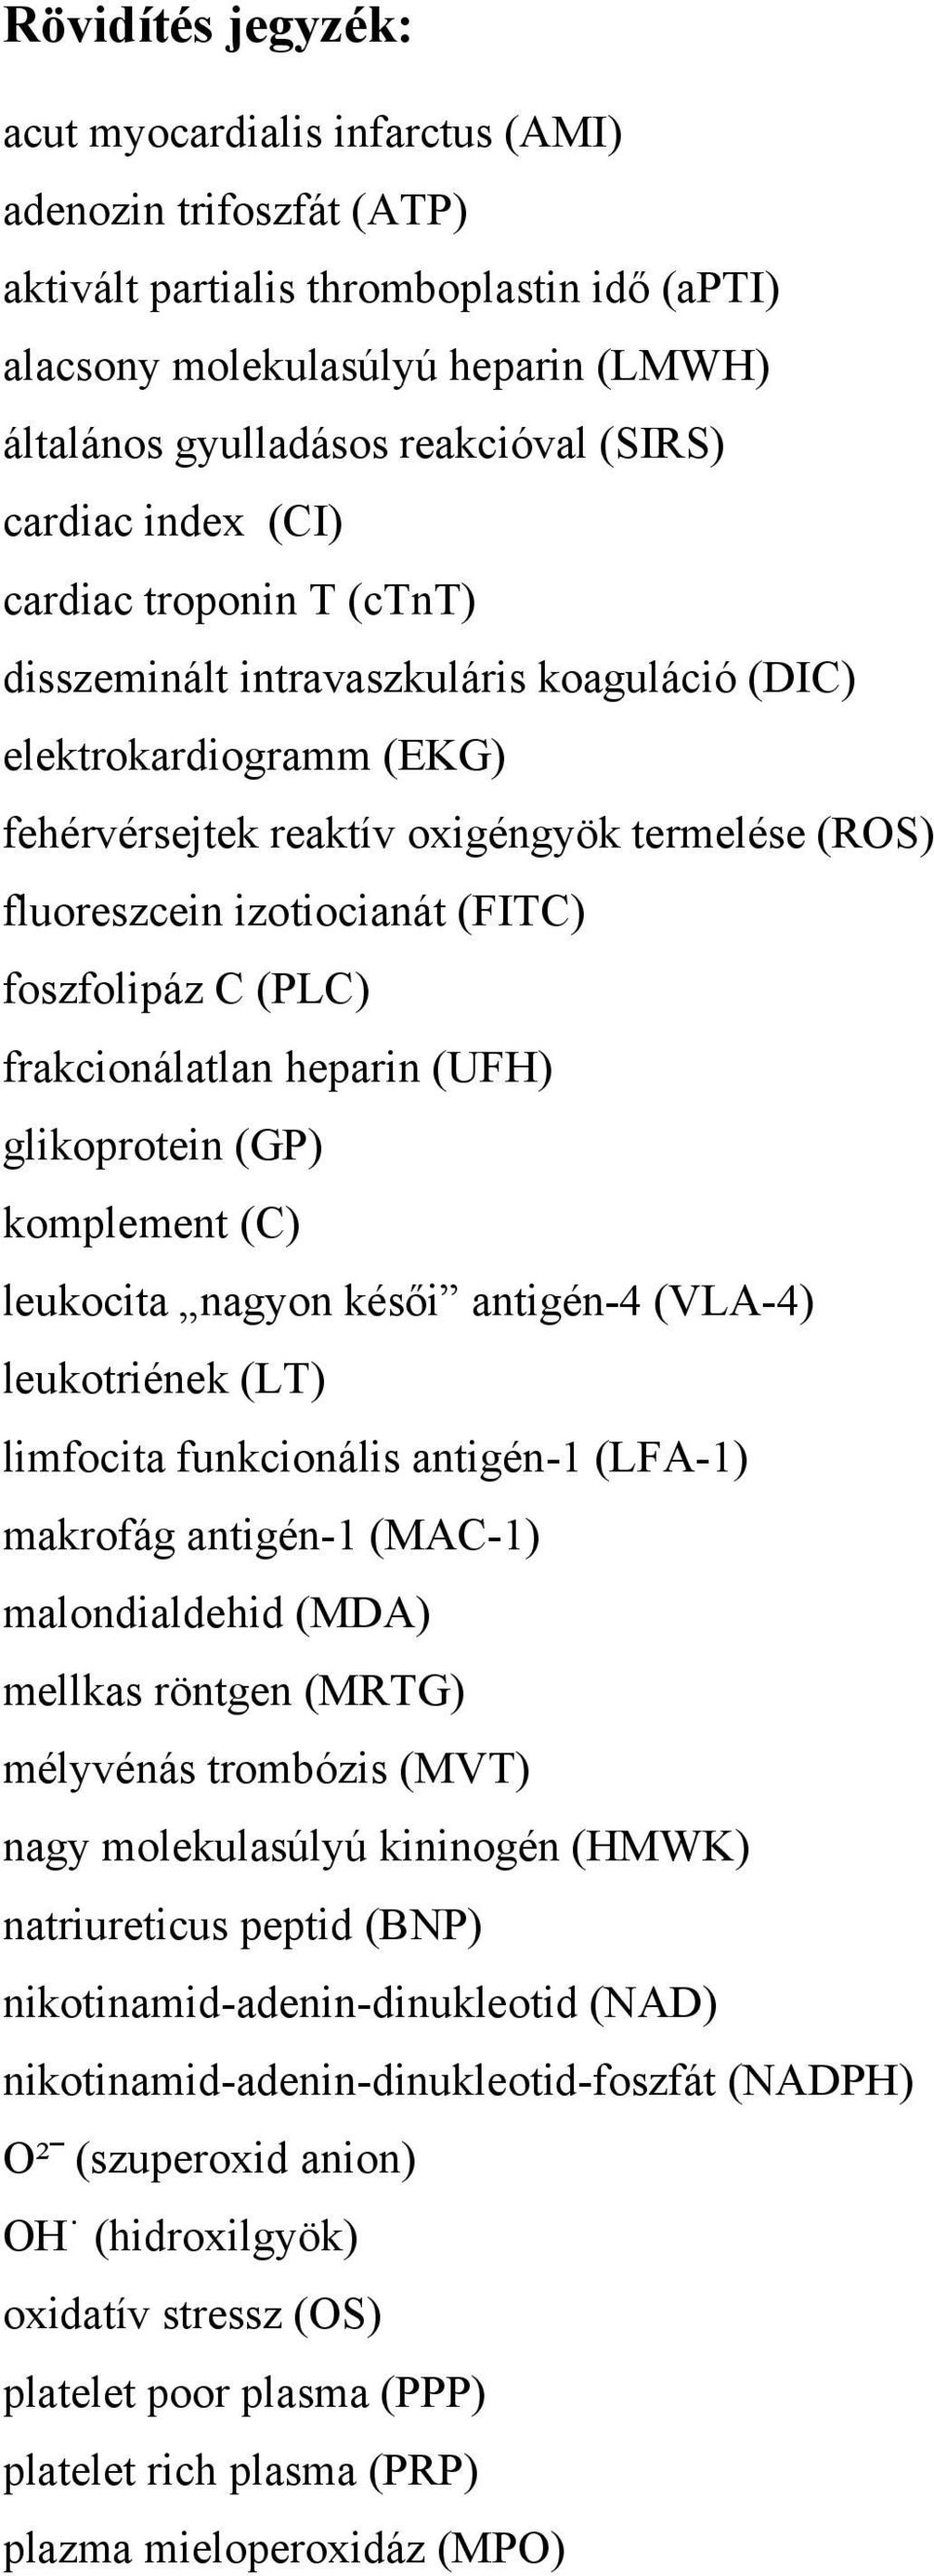 (FITC) foszfolipáz C (PLC) frakcionálatlan heparin (UFH) glikoprotein (GP) komplement (C) leukocita nagyon késői antigén-4 (VLA-4) leukotriének (LT) limfocita funkcionális antigén-1 (LFA-1) makrofág